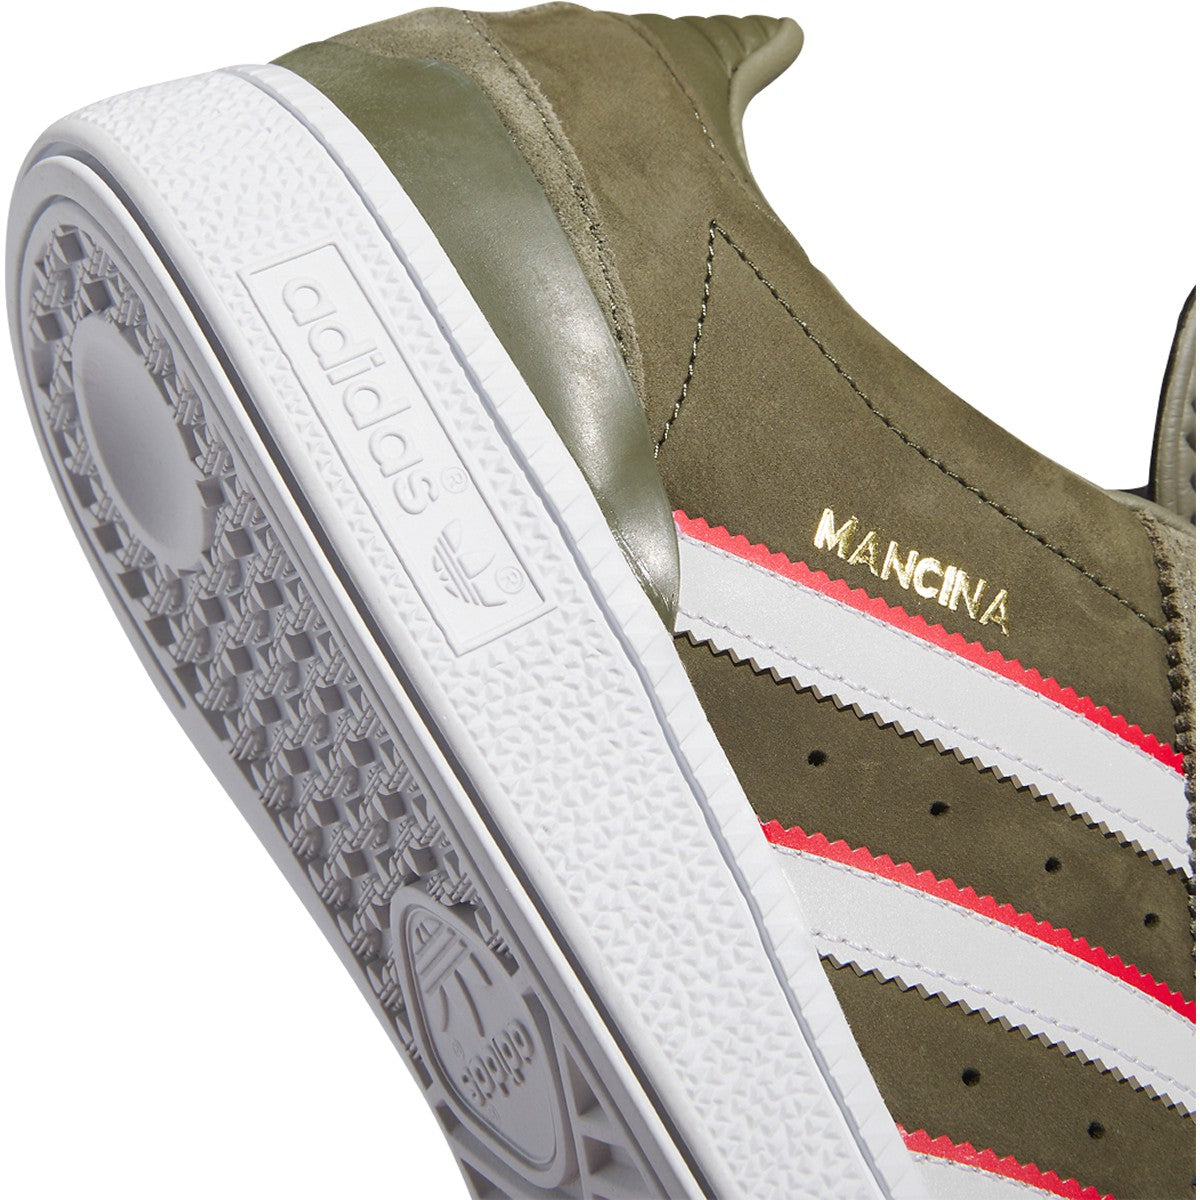 Dan Mancina x Busenitz Adidas Skate Shoe Detail